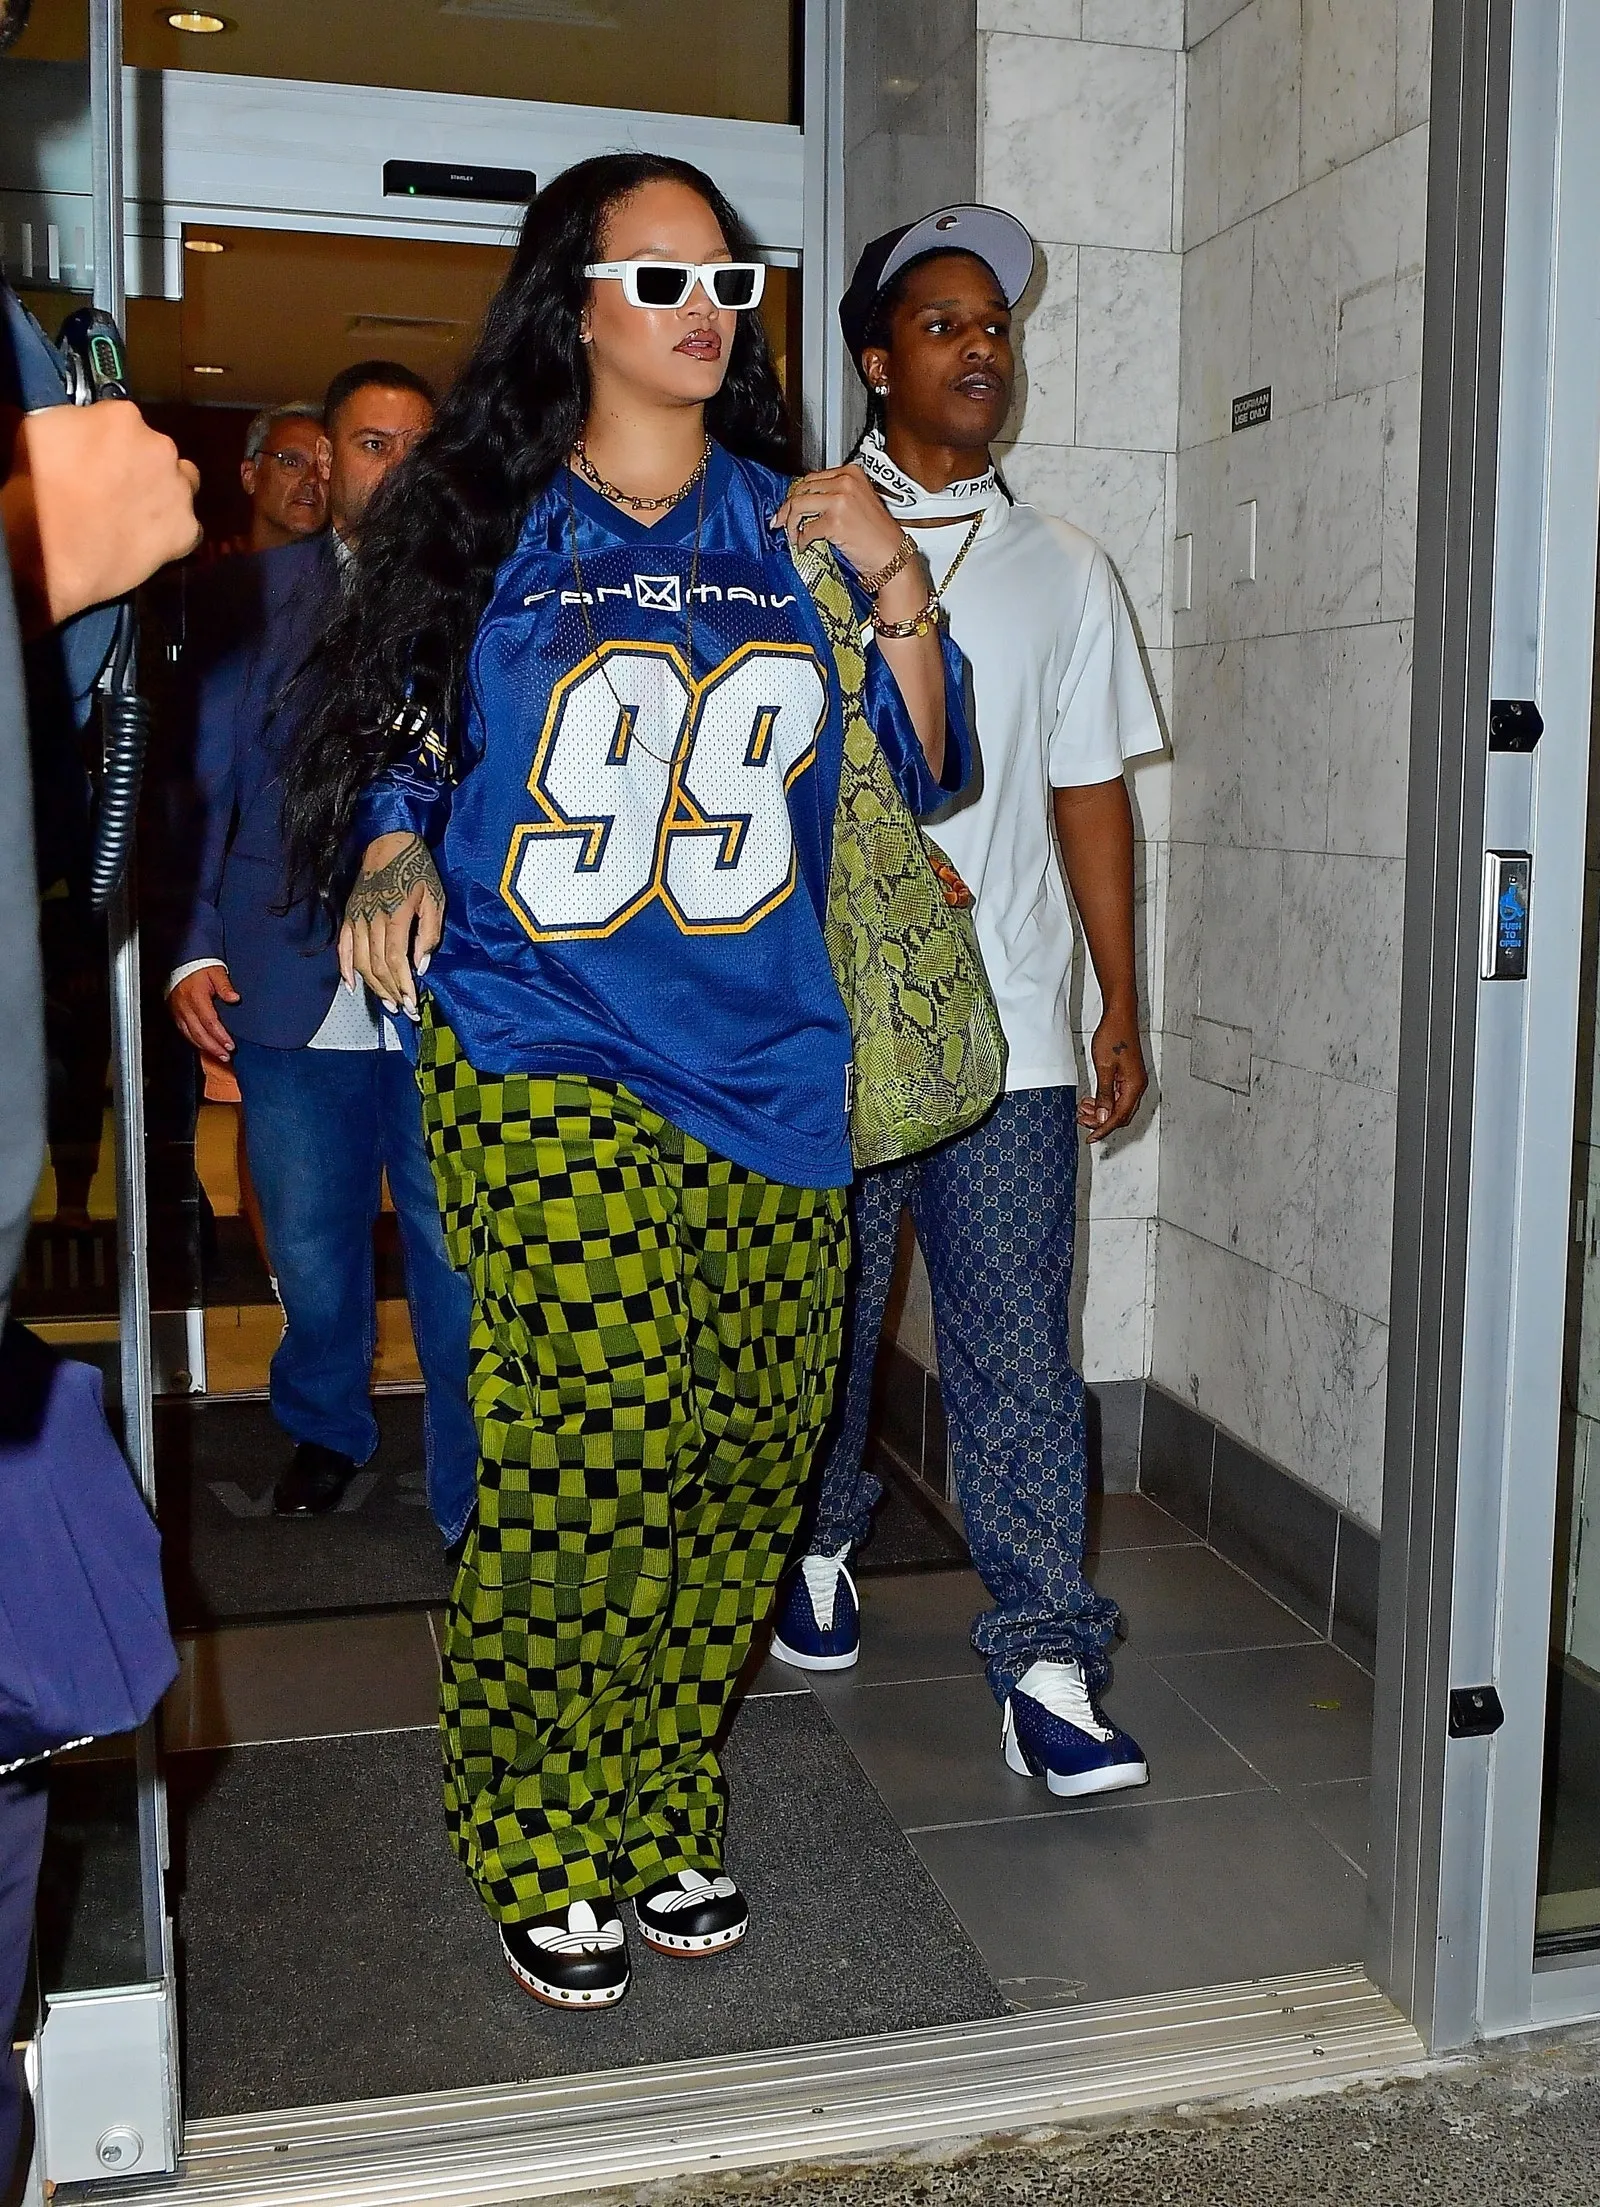 Pamer Sisi Tomboy, Ini Gaya Ikonik Rihanna Pakai Kaus Jersey di Jalan